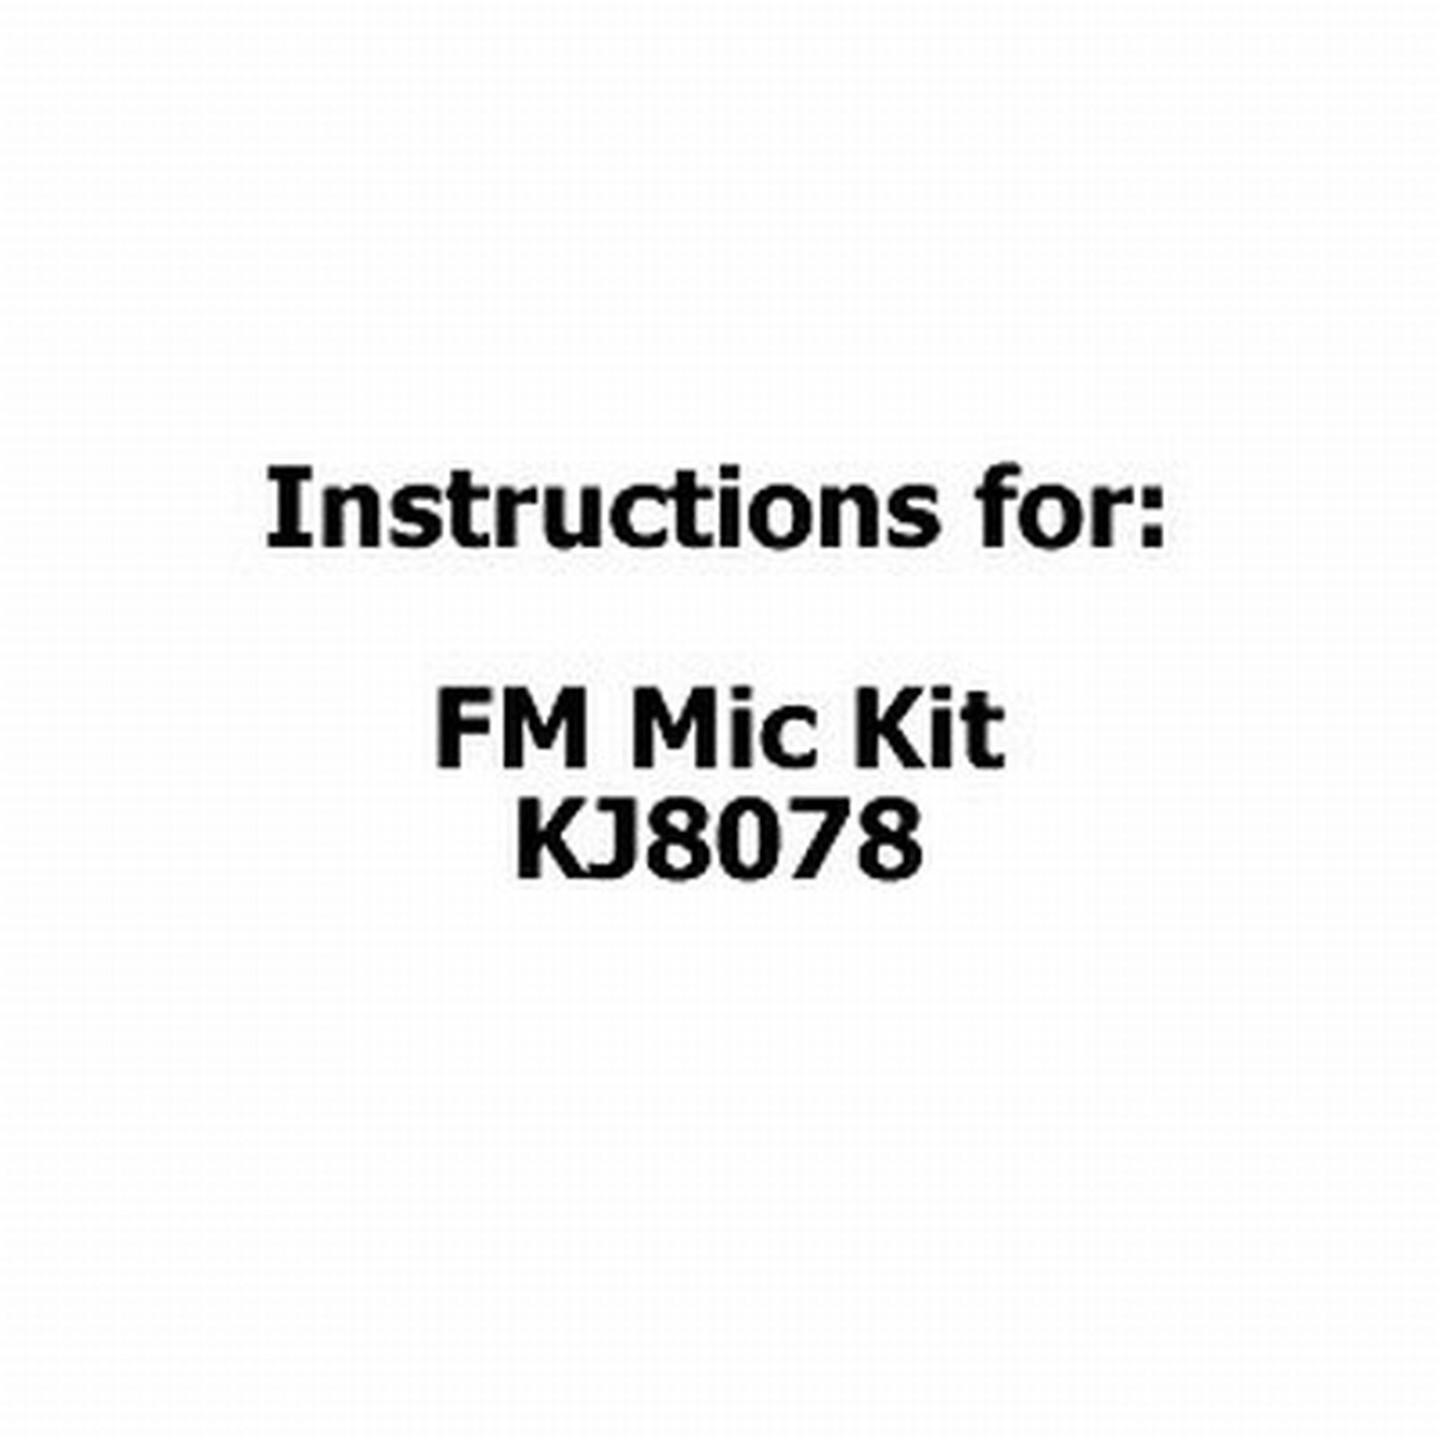 Instructions for FM Mic Kit KJ8078